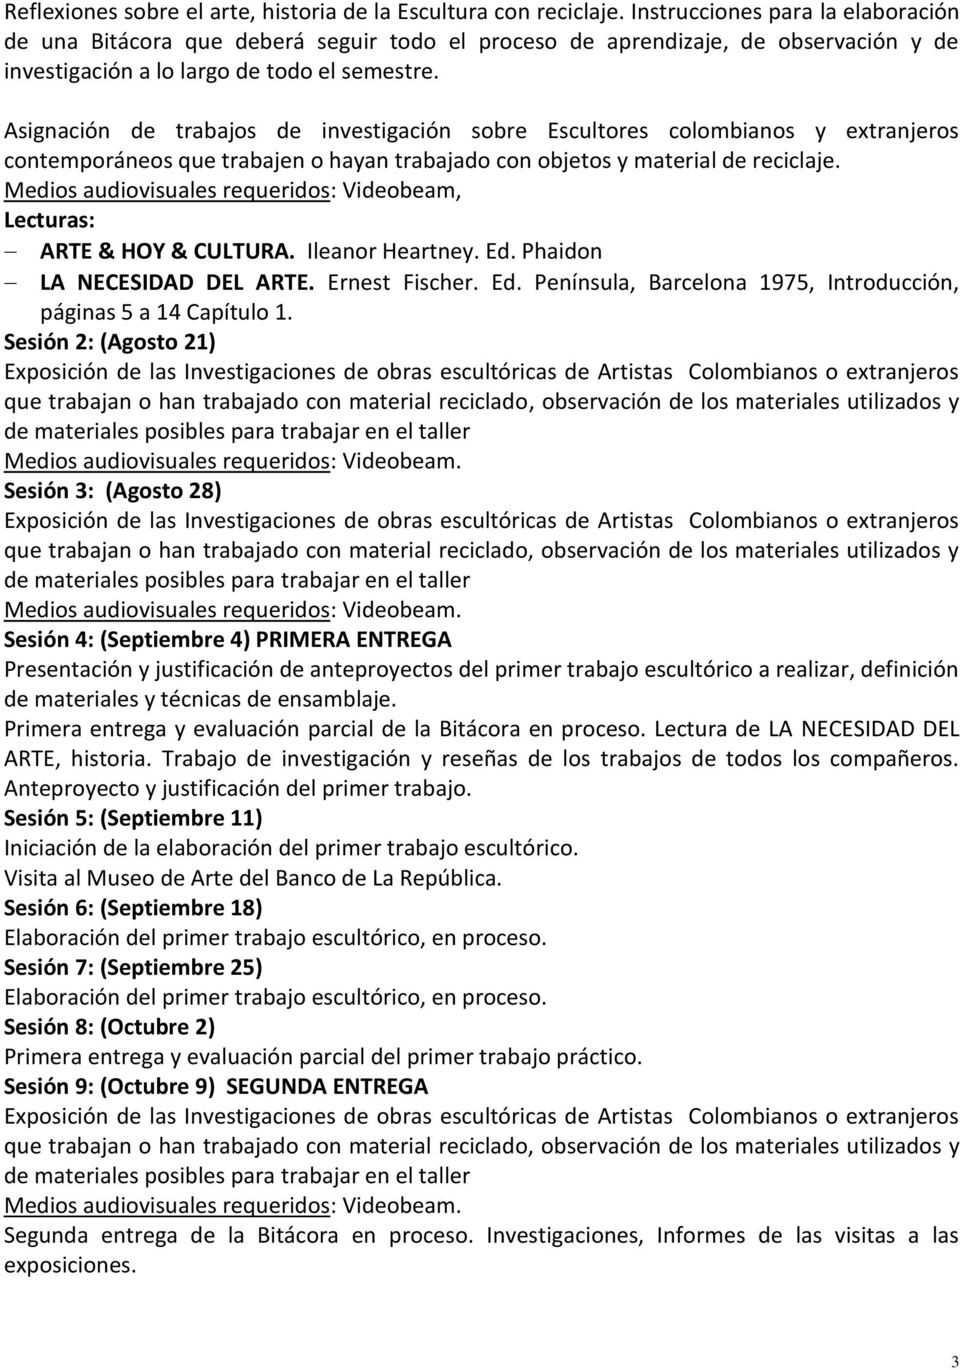 Asignación de trabajos de investigación sobre Escultores colombianos y extranjeros contemporáneos que trabajen o hayan trabajado con objetos y material de reciclaje.